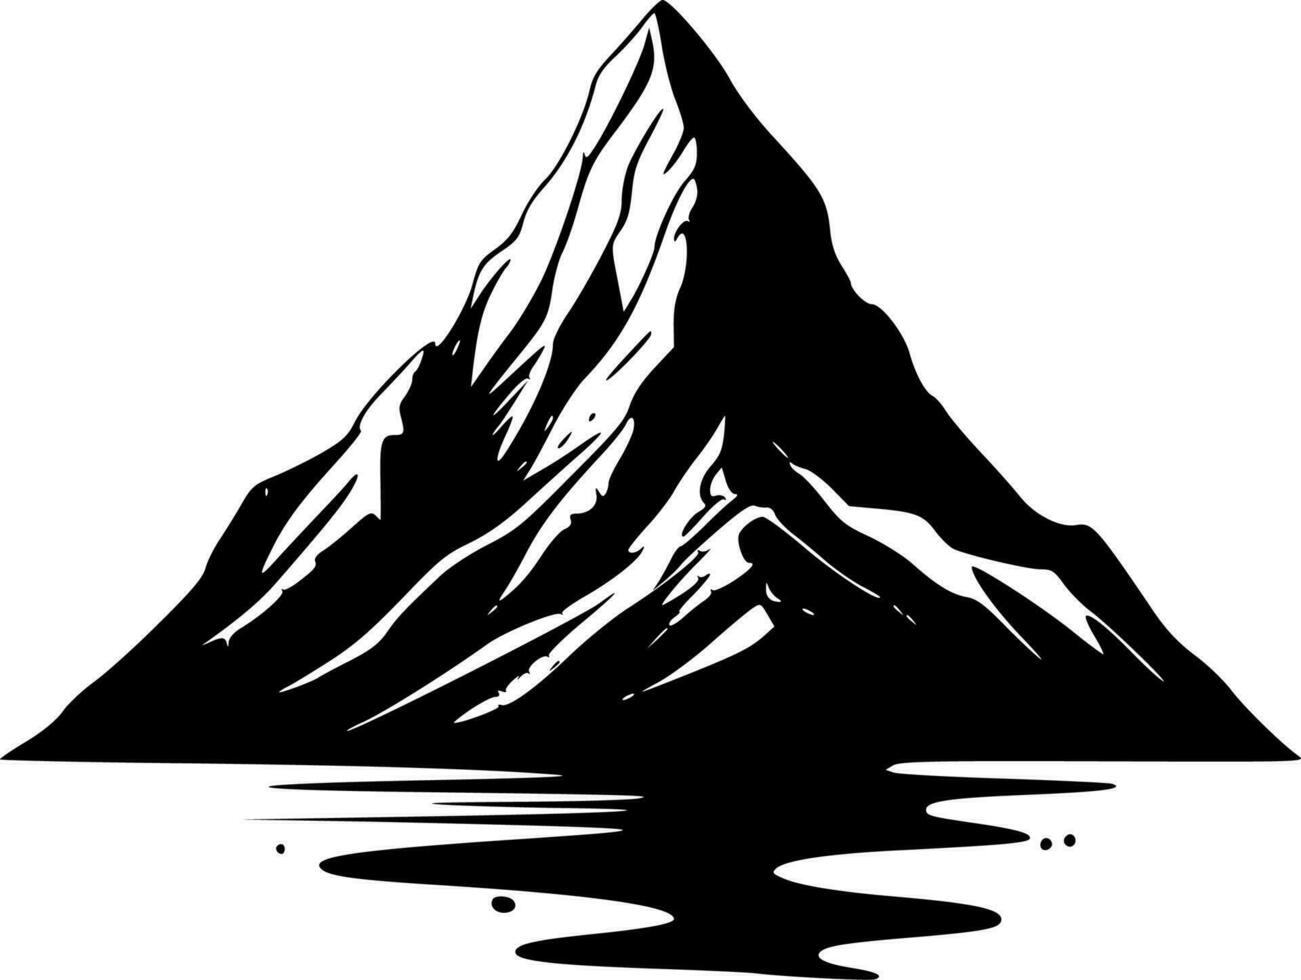 montaña - minimalista y plano logo - vector ilustración